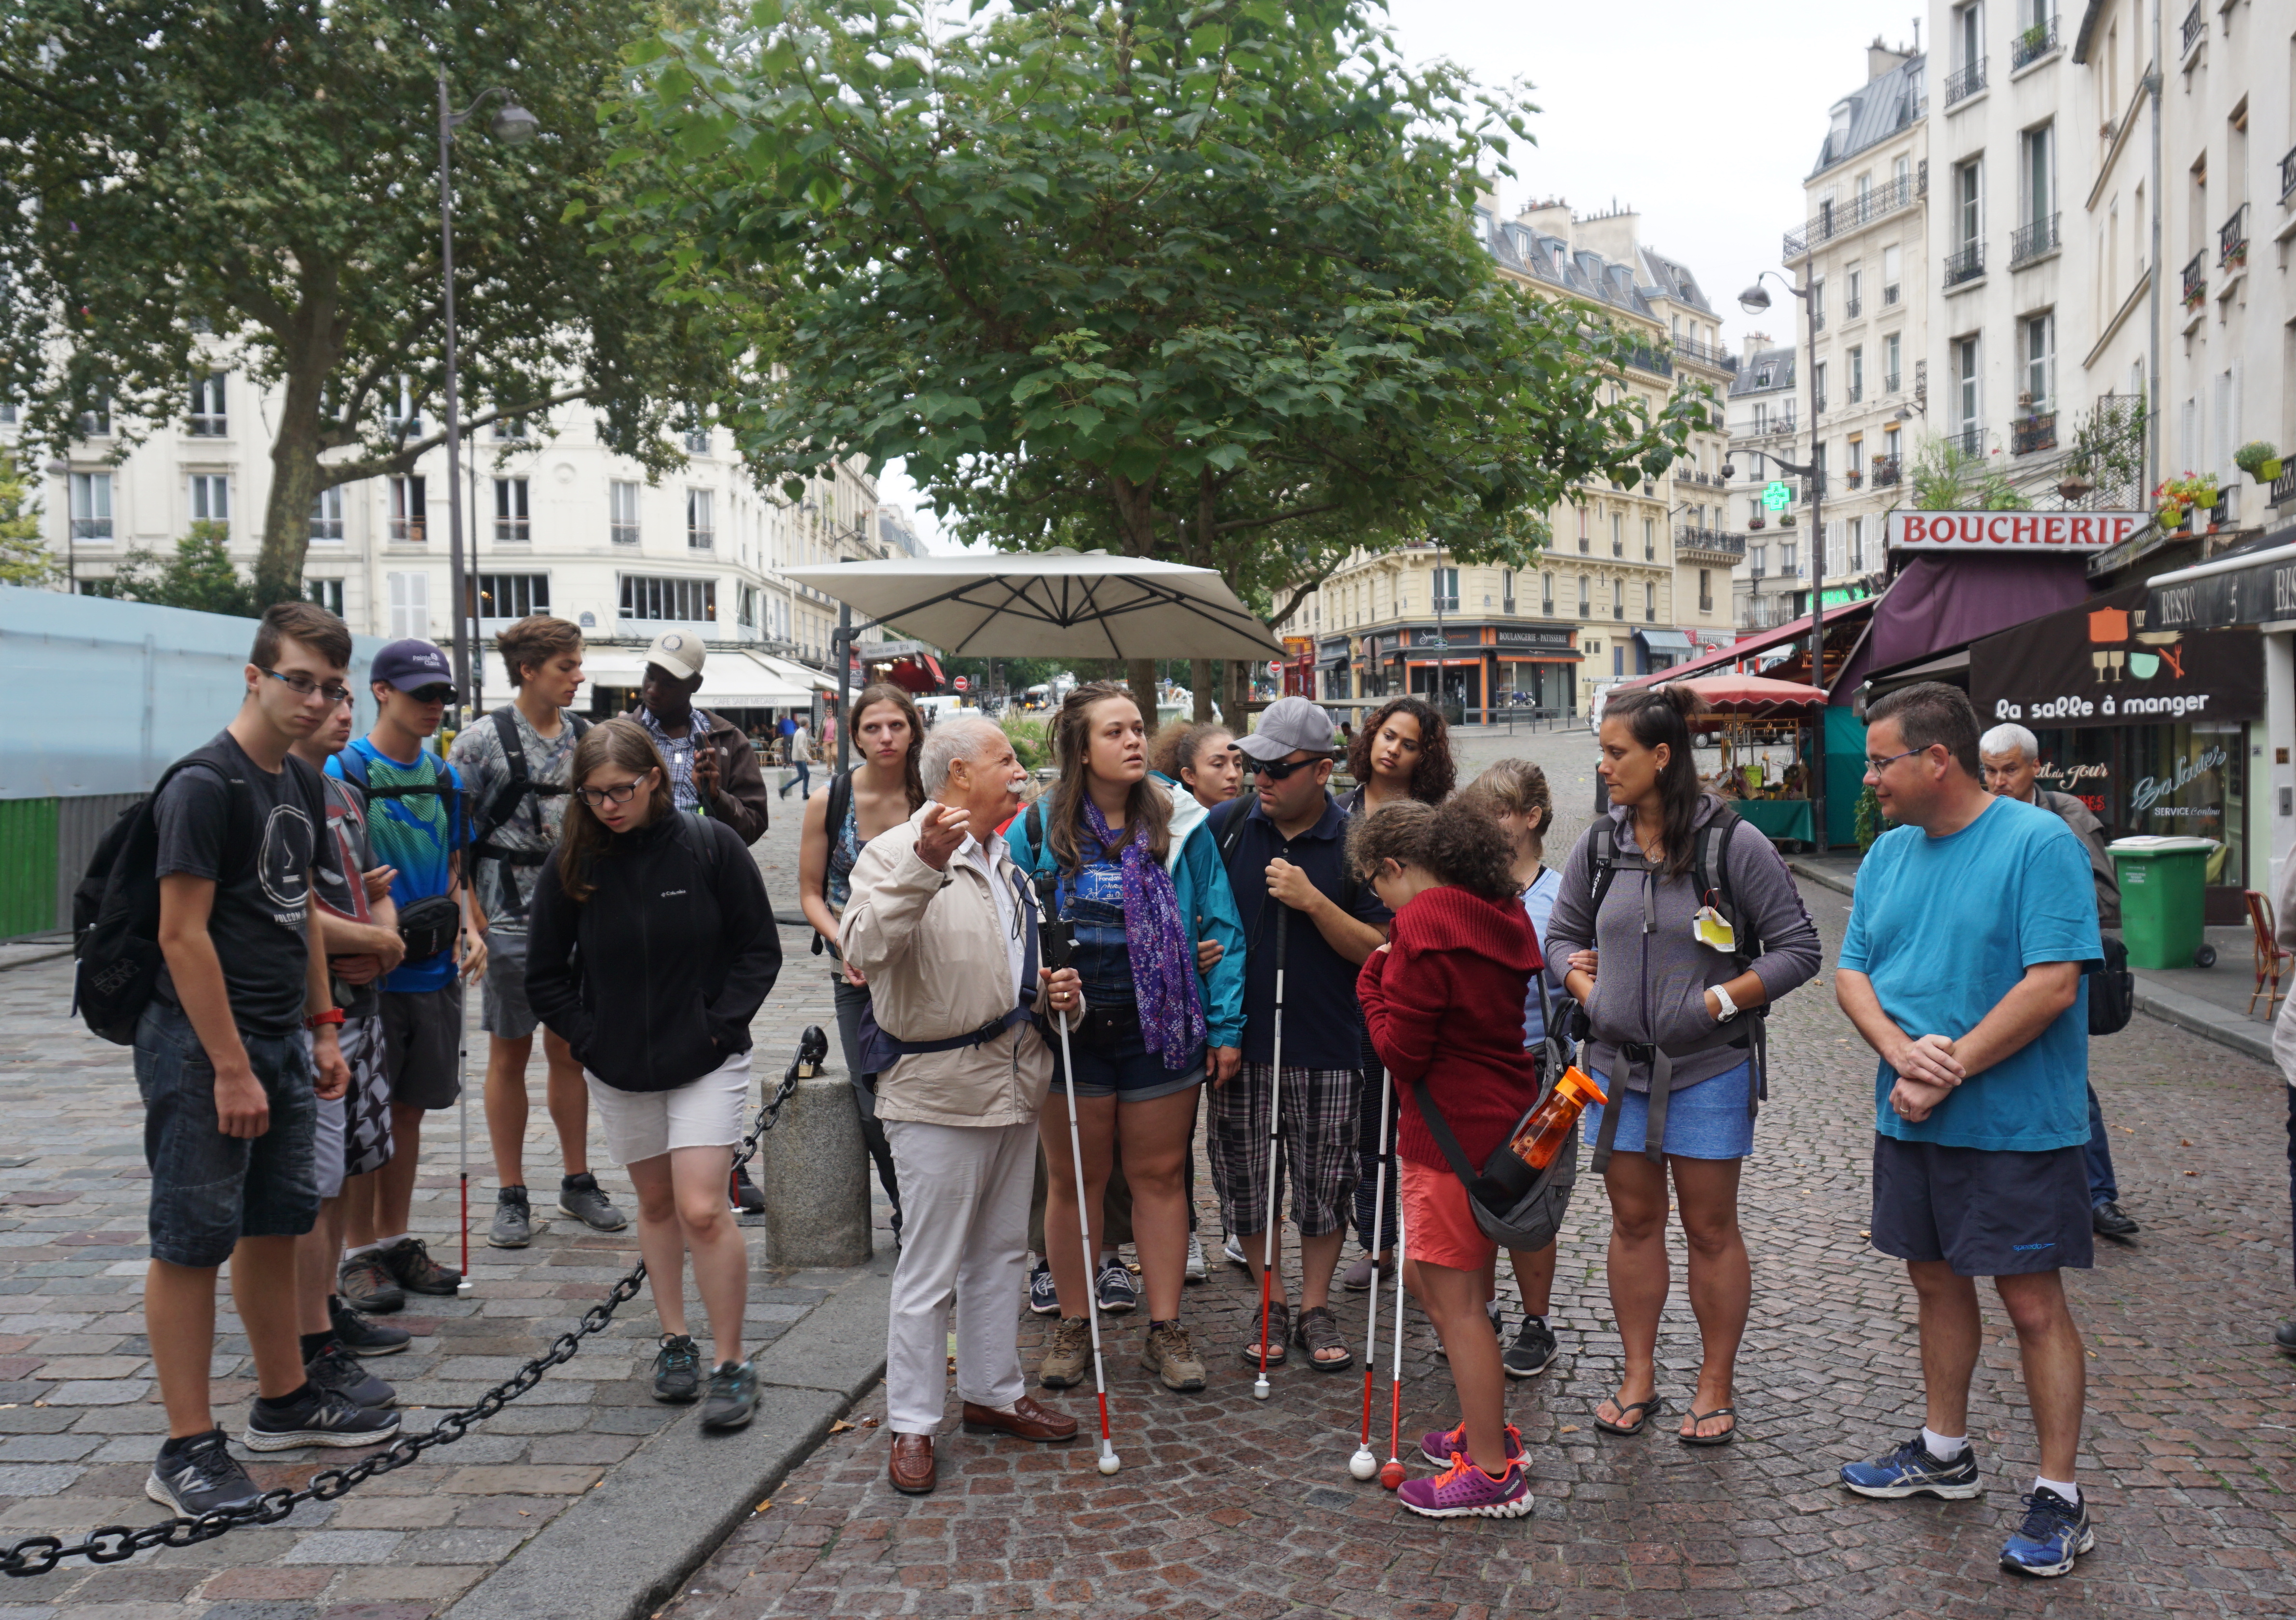 Le groupe écoute monsieur Murienne leur parler du vieux Paris